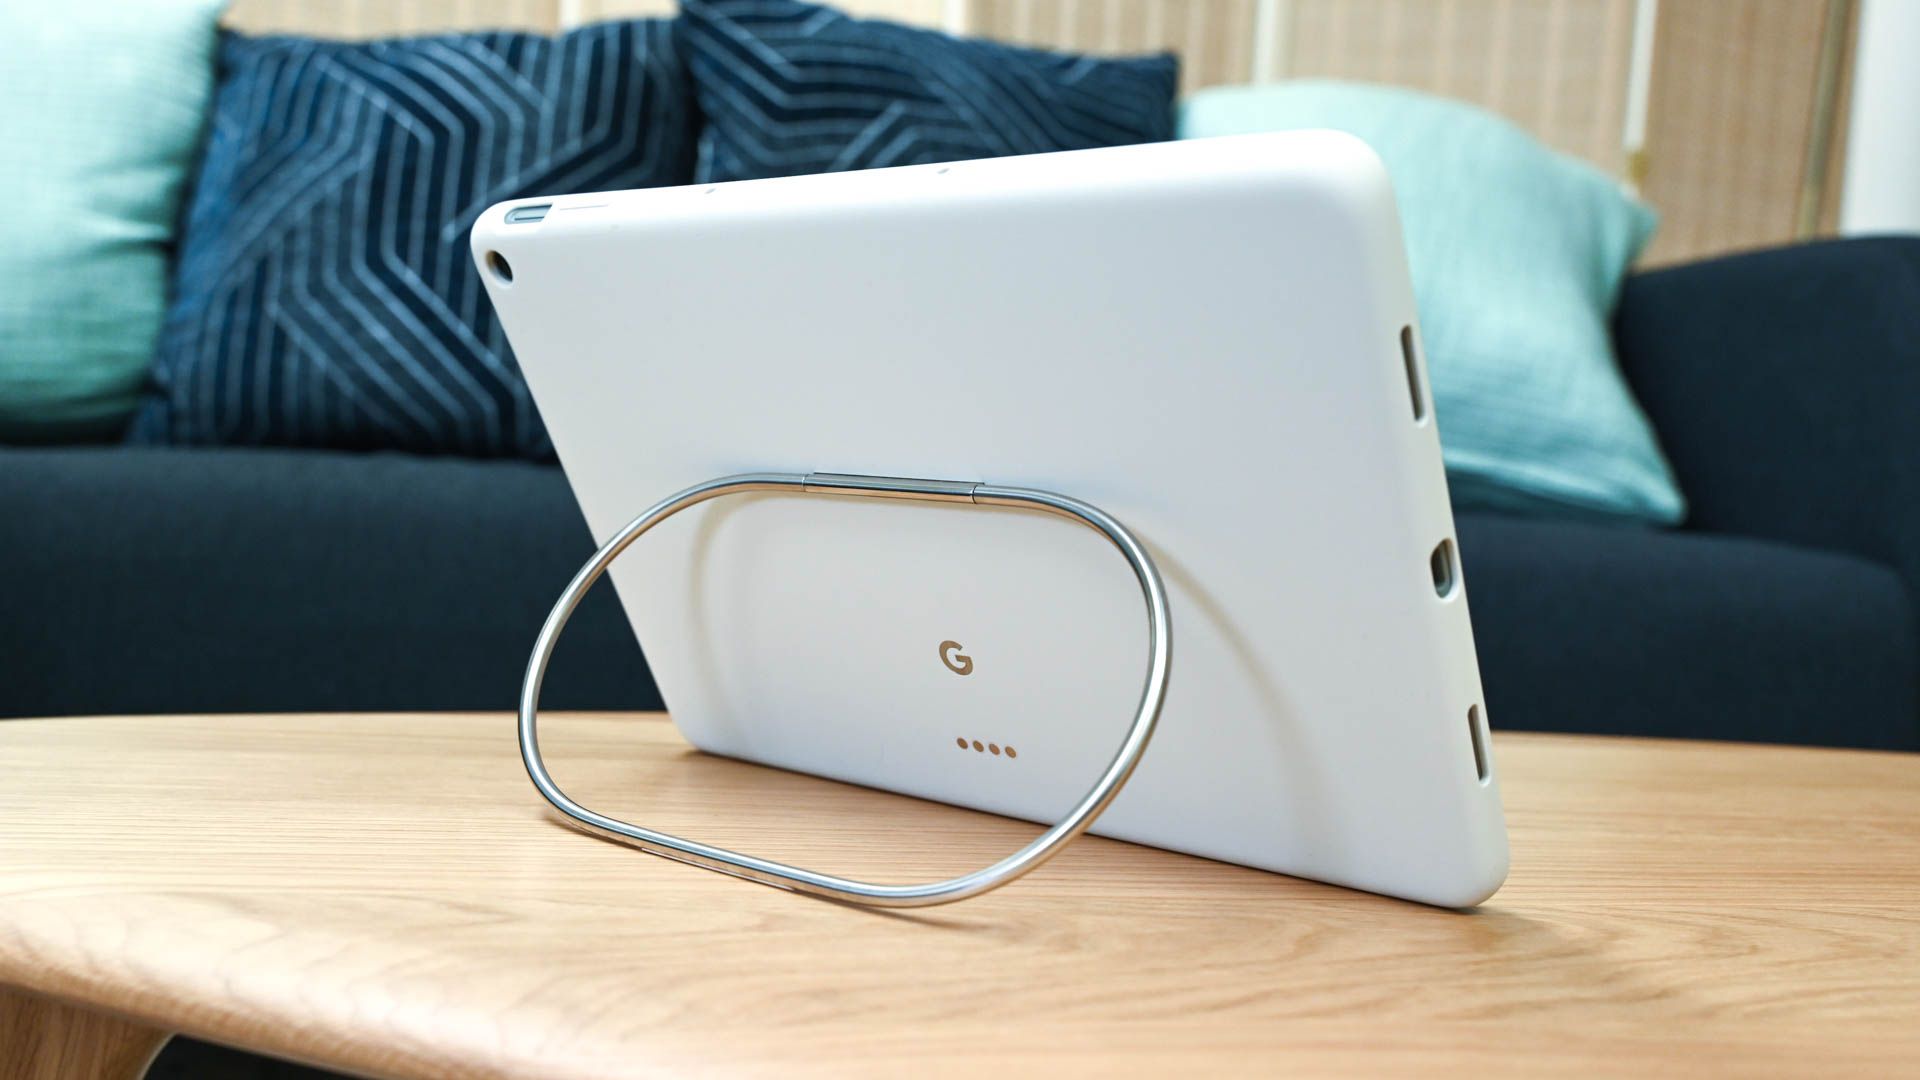 O Google Pixel Tablet apoiado no suporte da capa